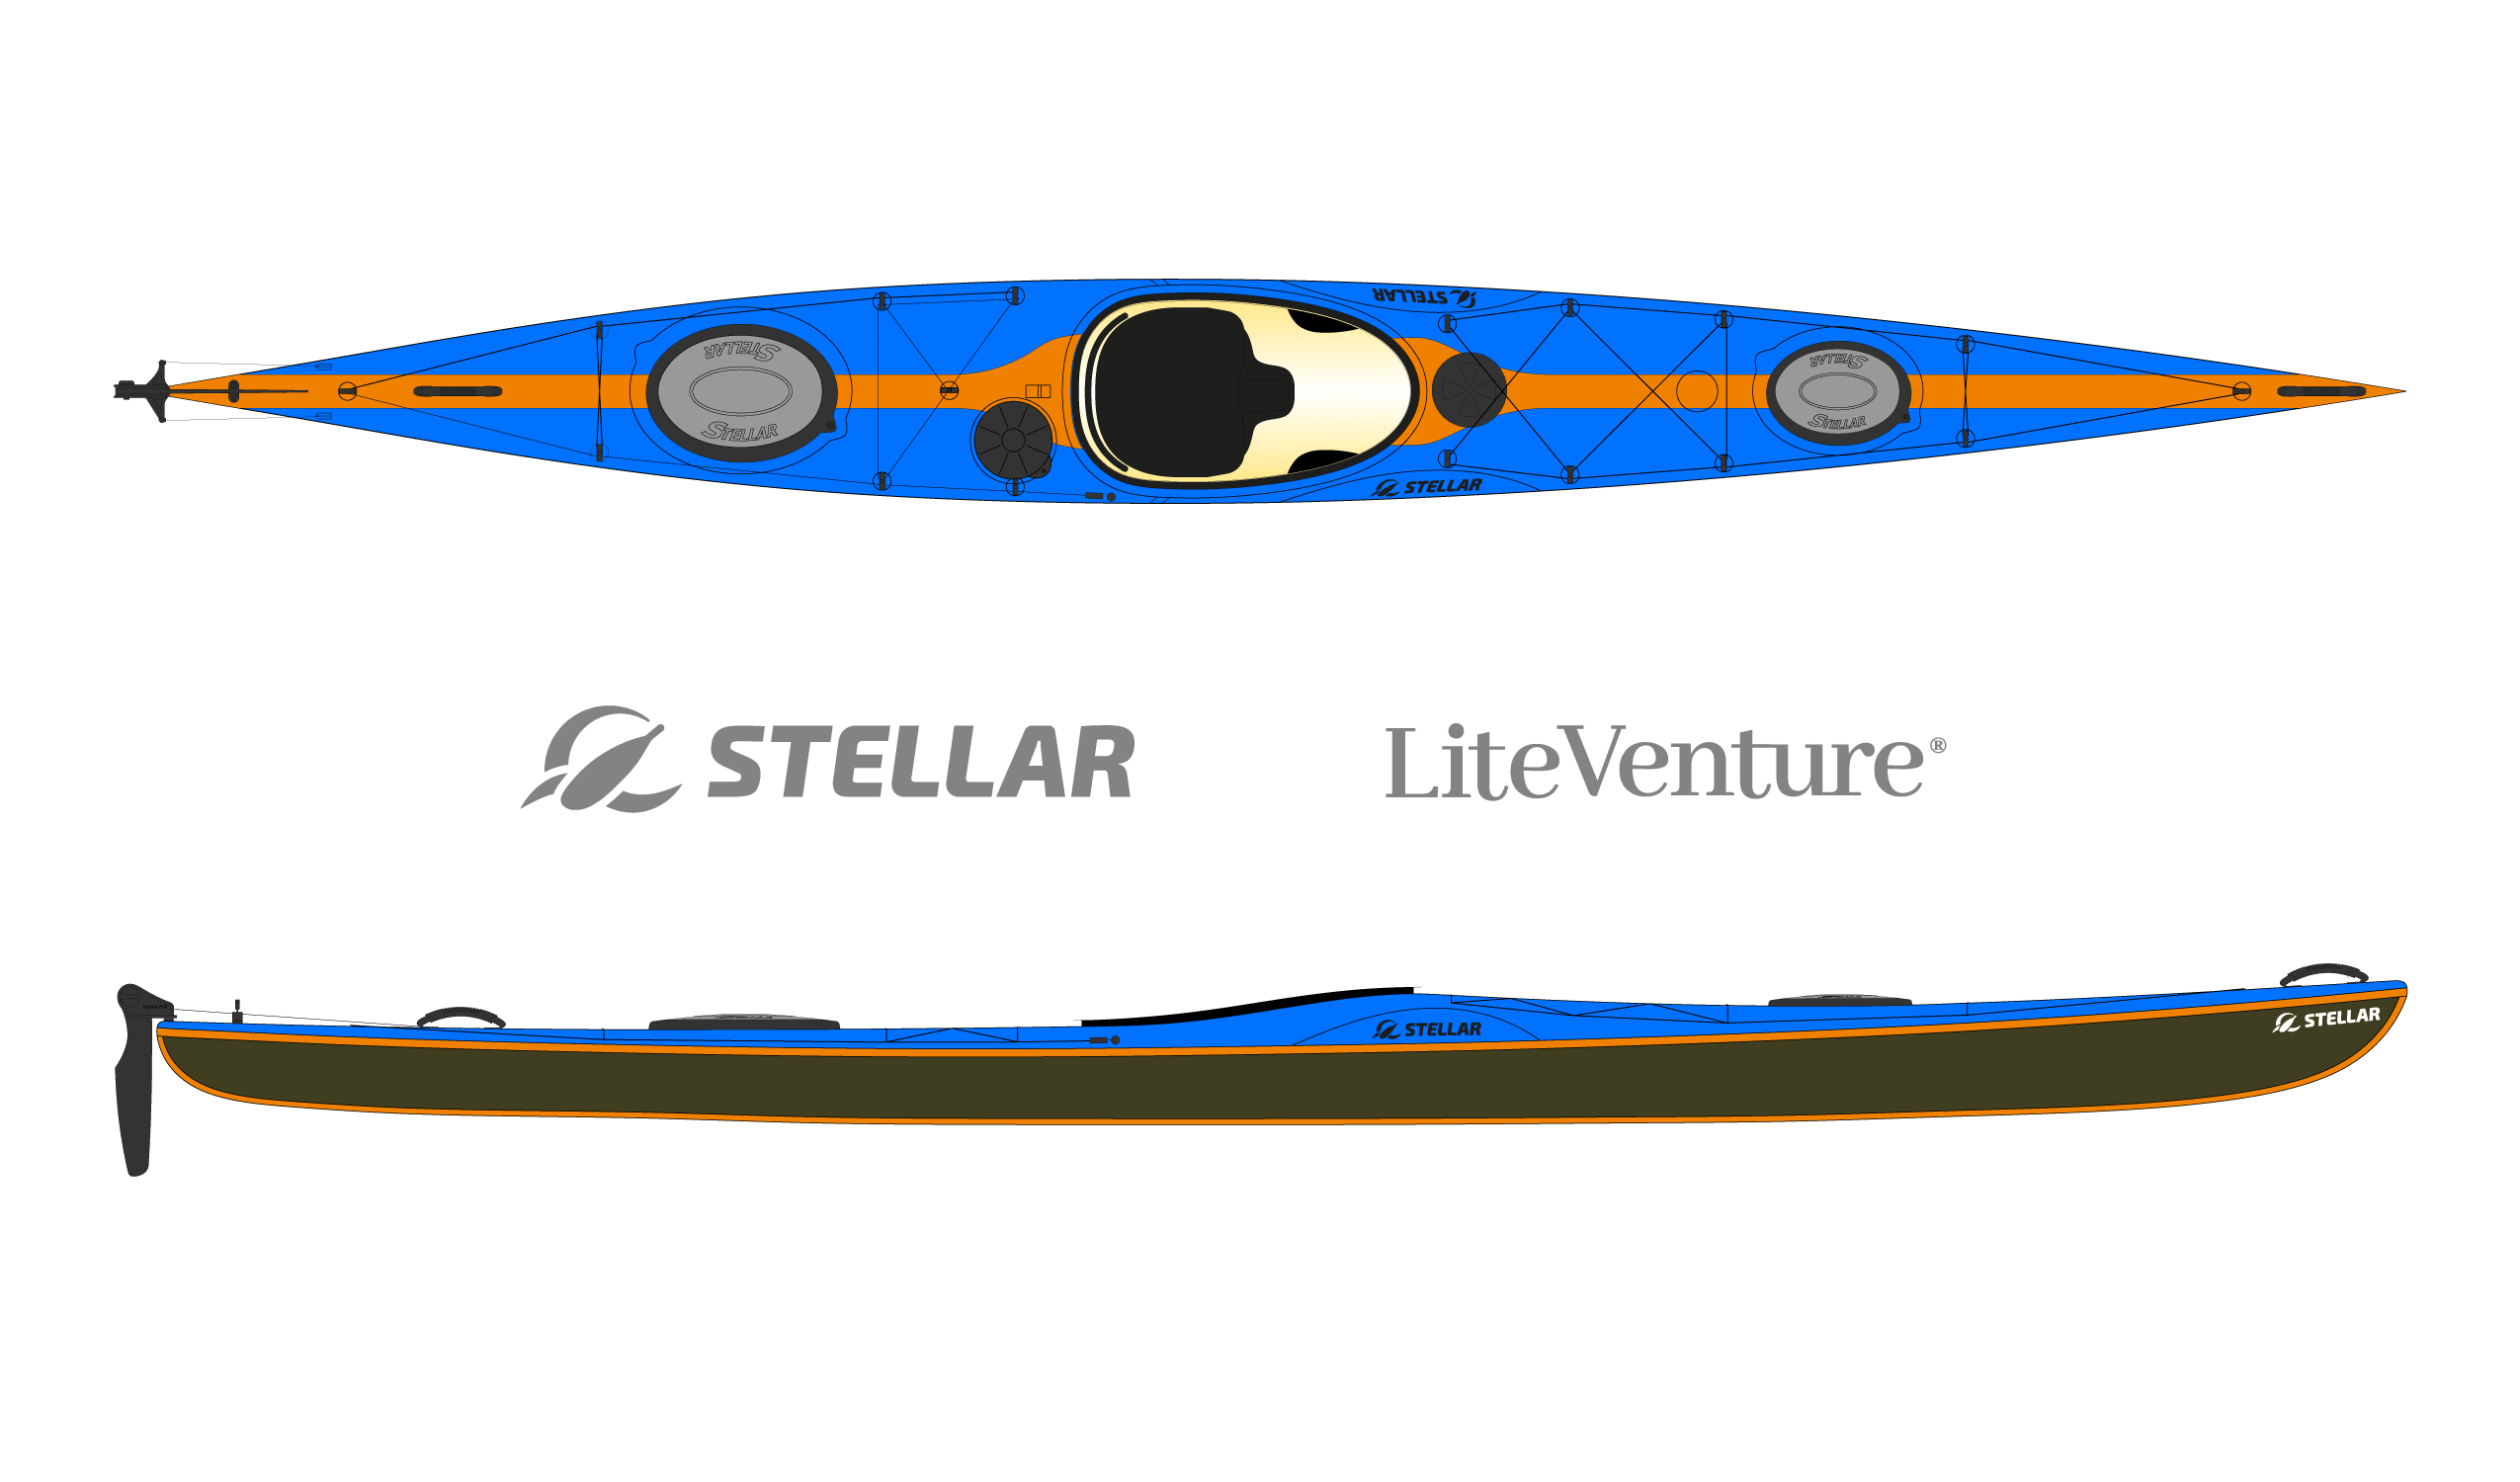 Produktbild von Kajak " S18 Expedition Multisport-blau orange " der Marke STELLAR Lightweight für 3490.00 €. Erhältlich online bei Lite Venture ( www.liteventure.de )